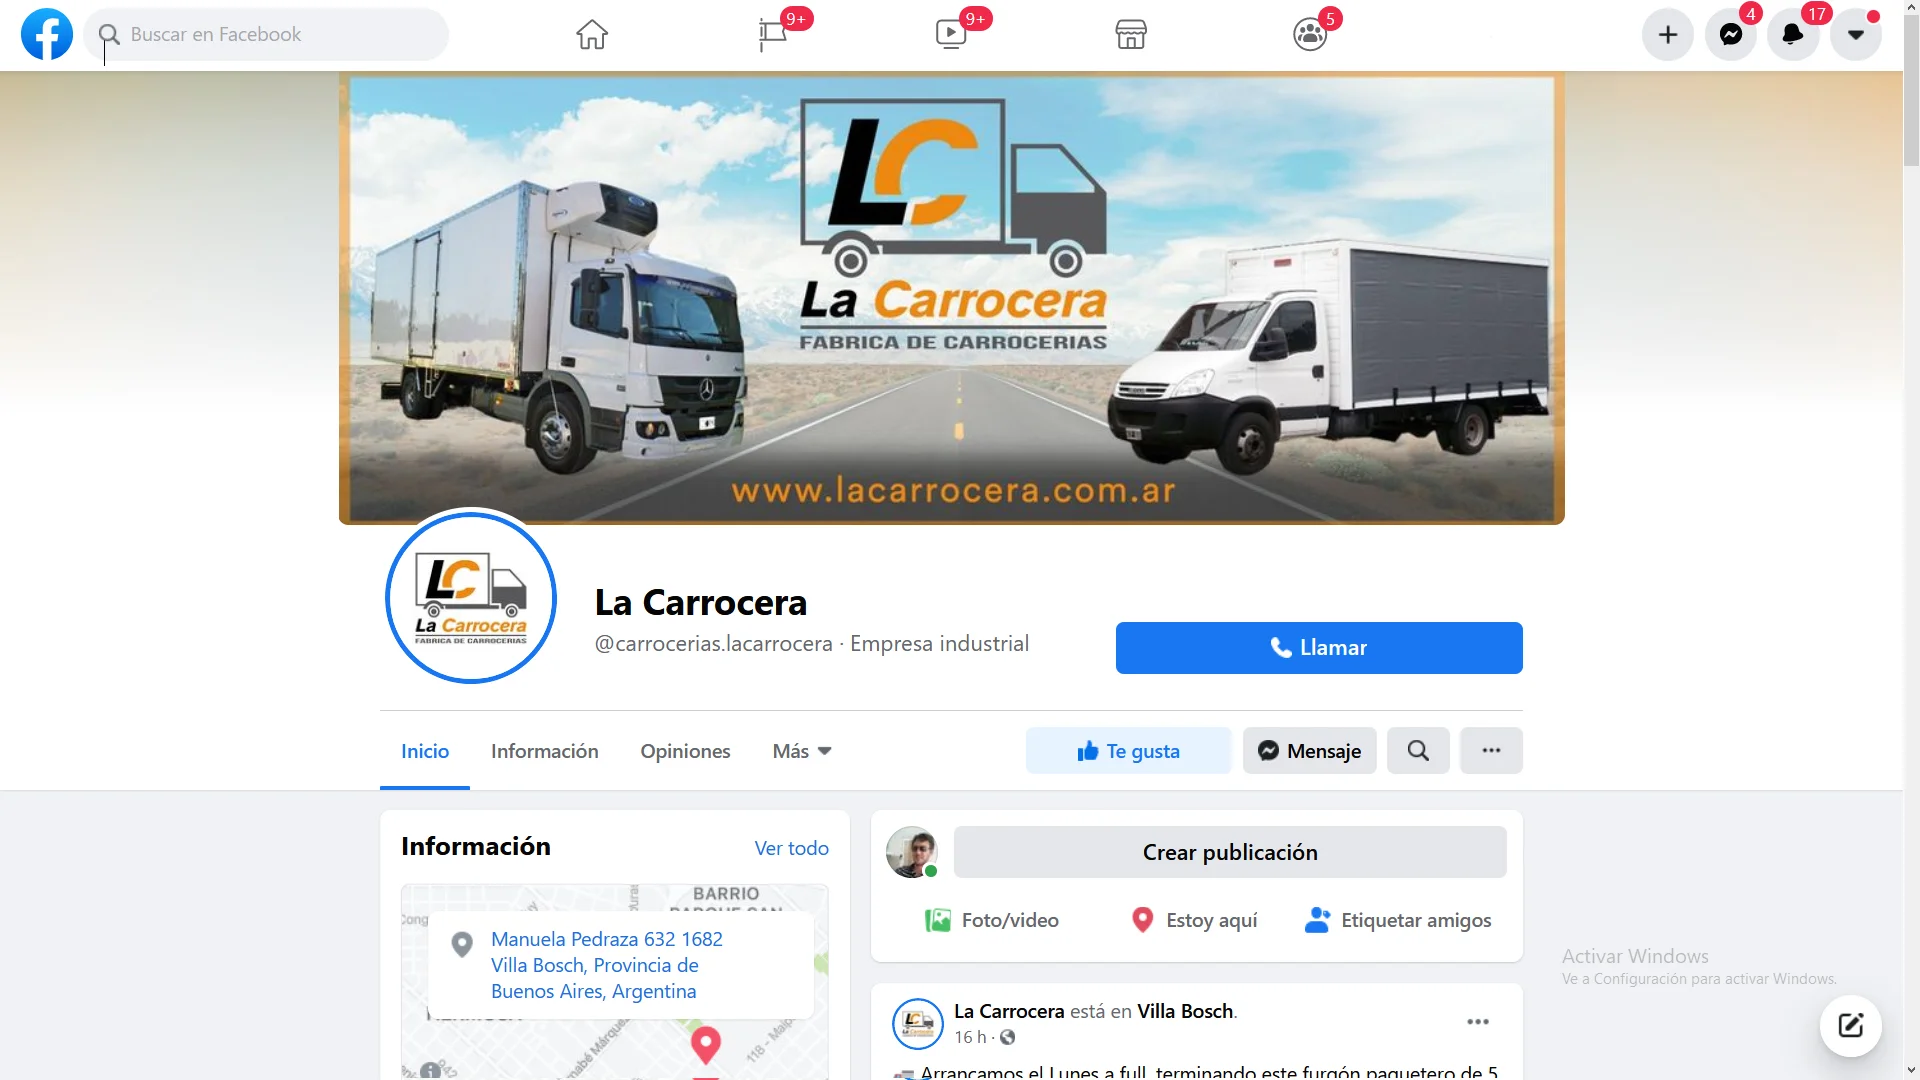 LA CARROCERA | Fábrica de Carrocerías - Facebook